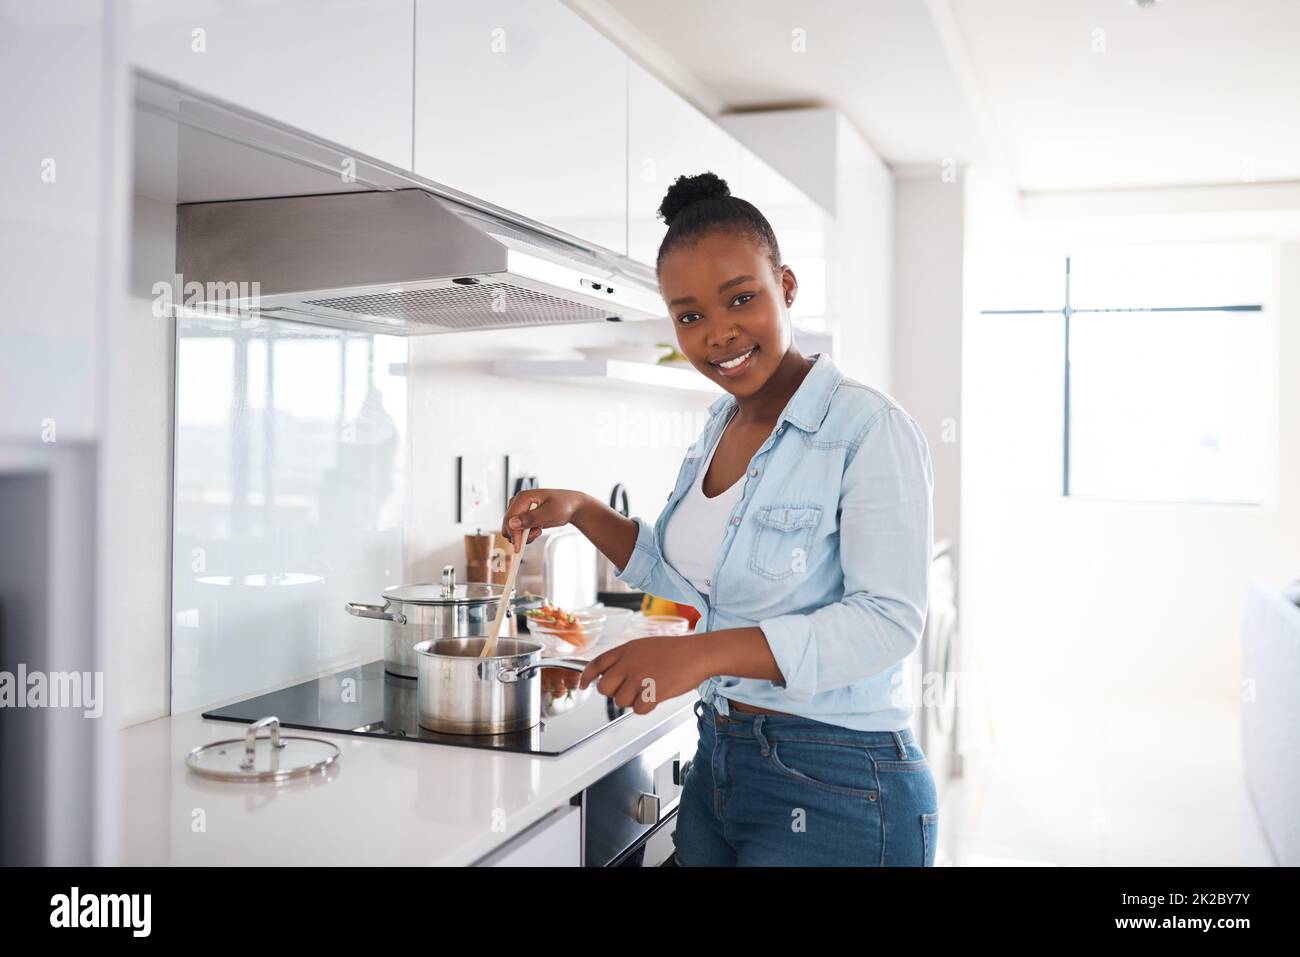 Un repas copieux est ce qui fait d'une maison une maison. Photo d'une belle jeune femme qui cuisine dans sa cuisine à la maison. Banque D'Images